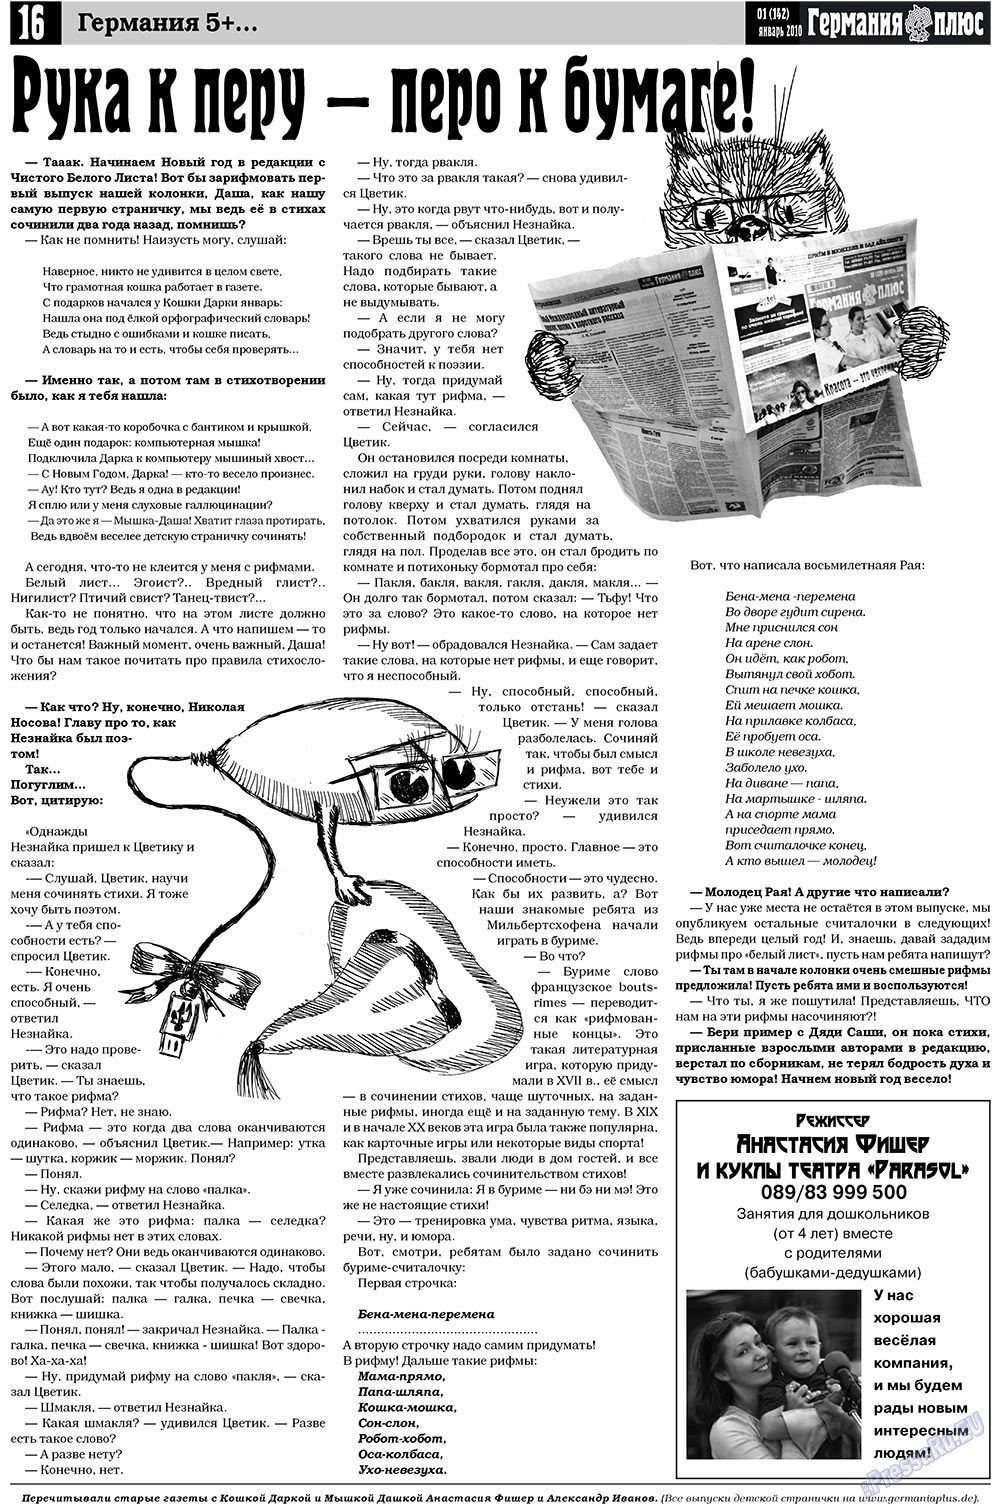 Германия плюс, газета. 2010 №1 стр.16